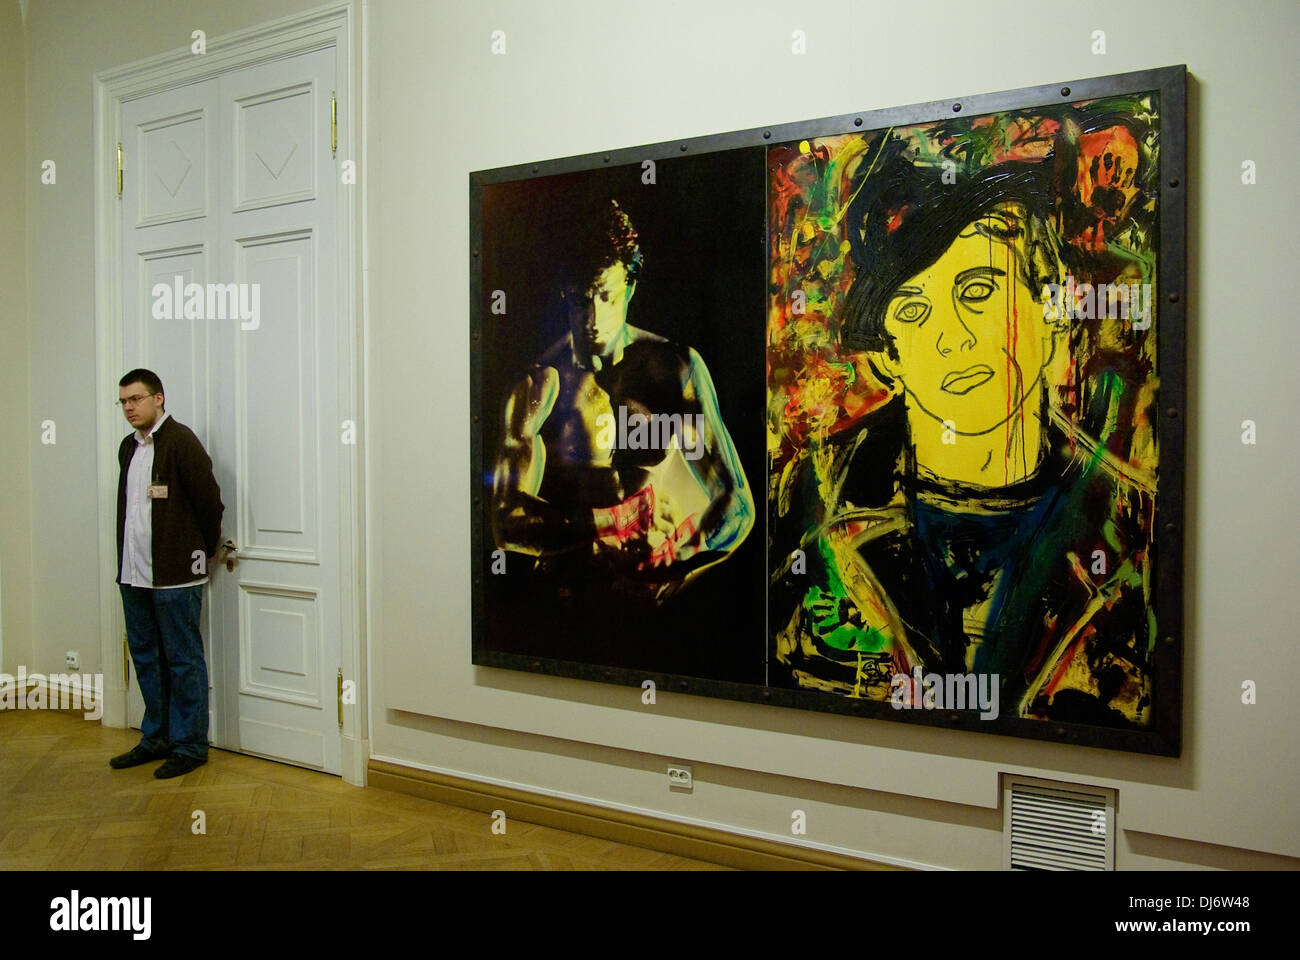 La Russie. Saint-pétersbourg. Exposition d'oeuvre de Sylvester Stallone dans le musée russe. Banque D'Images